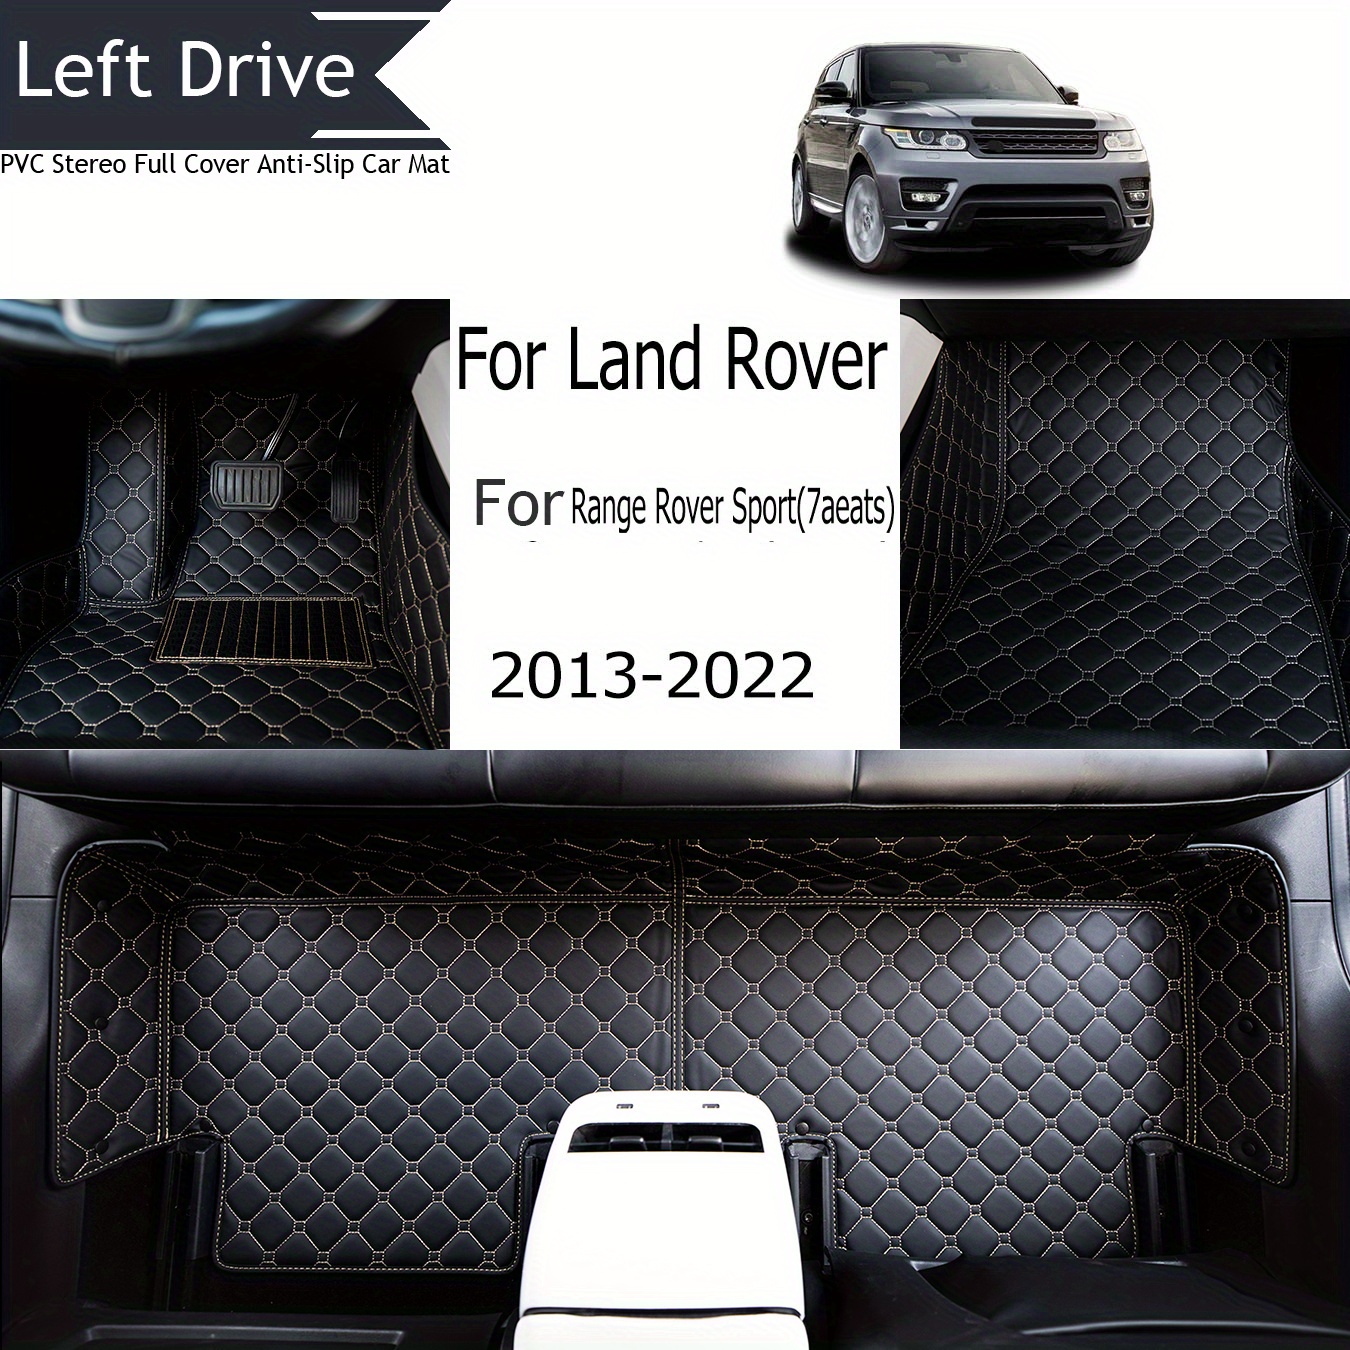 TEGART 【LHD】 Für Land Rover Für Range Rover Sport (7aeats) 2013